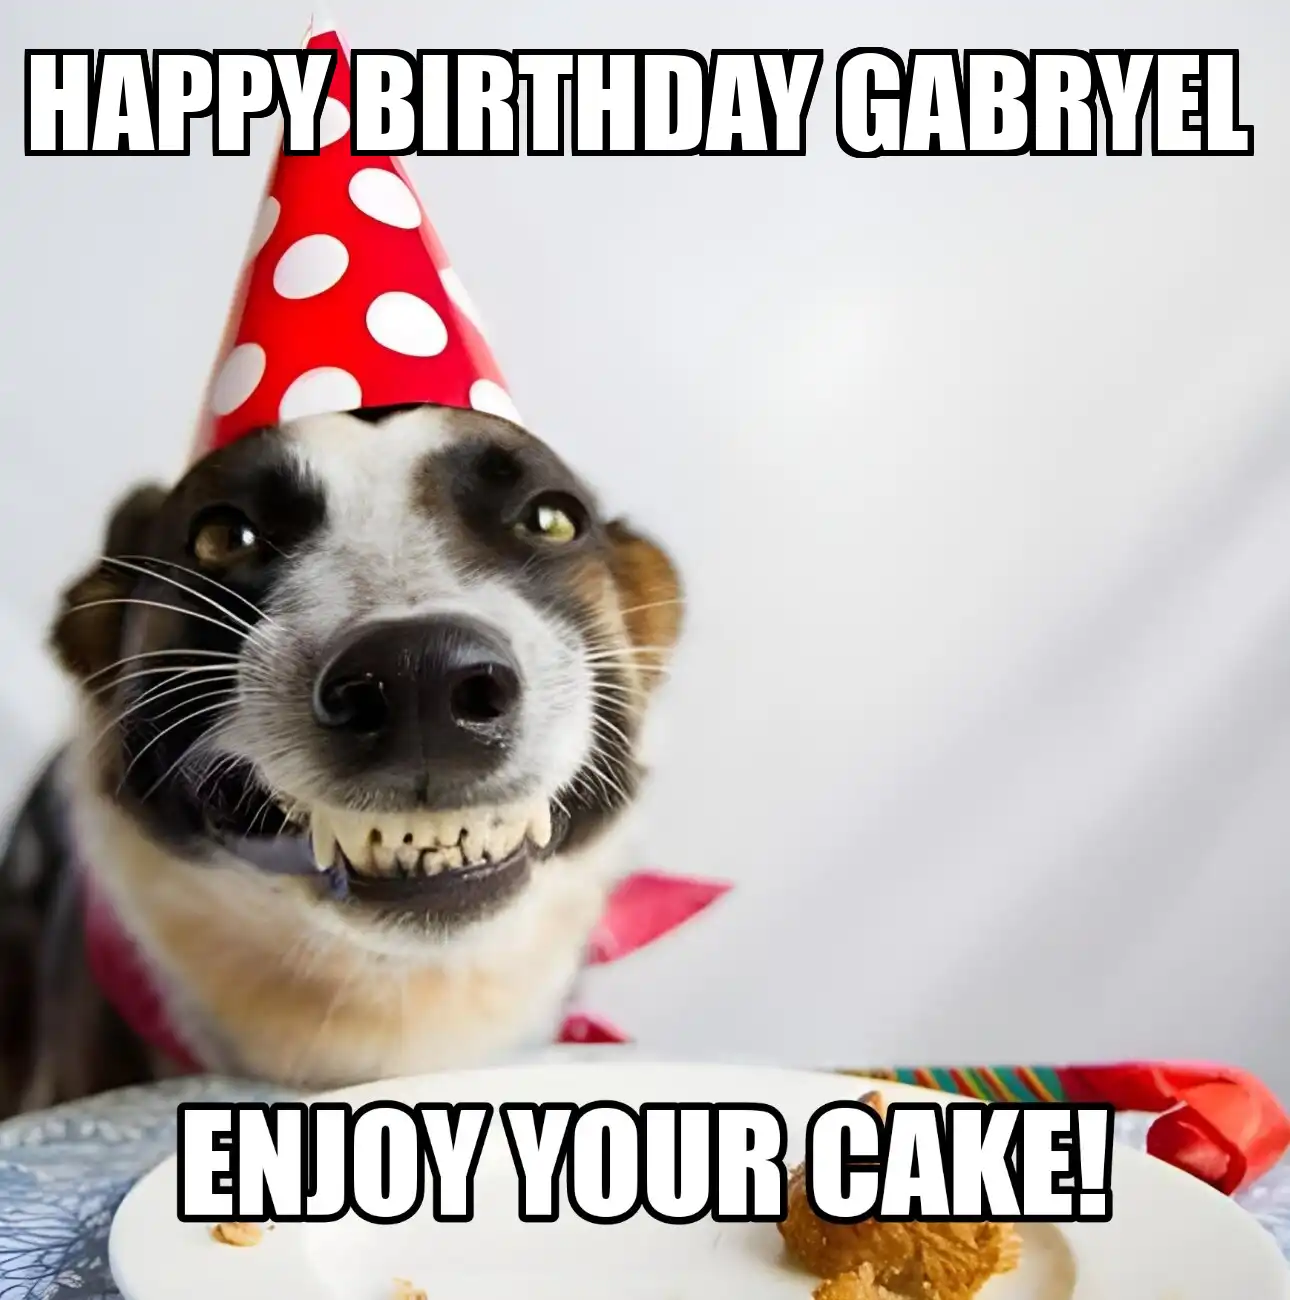 Happy Birthday Gabryel Enjoy Your Cake Dog Meme